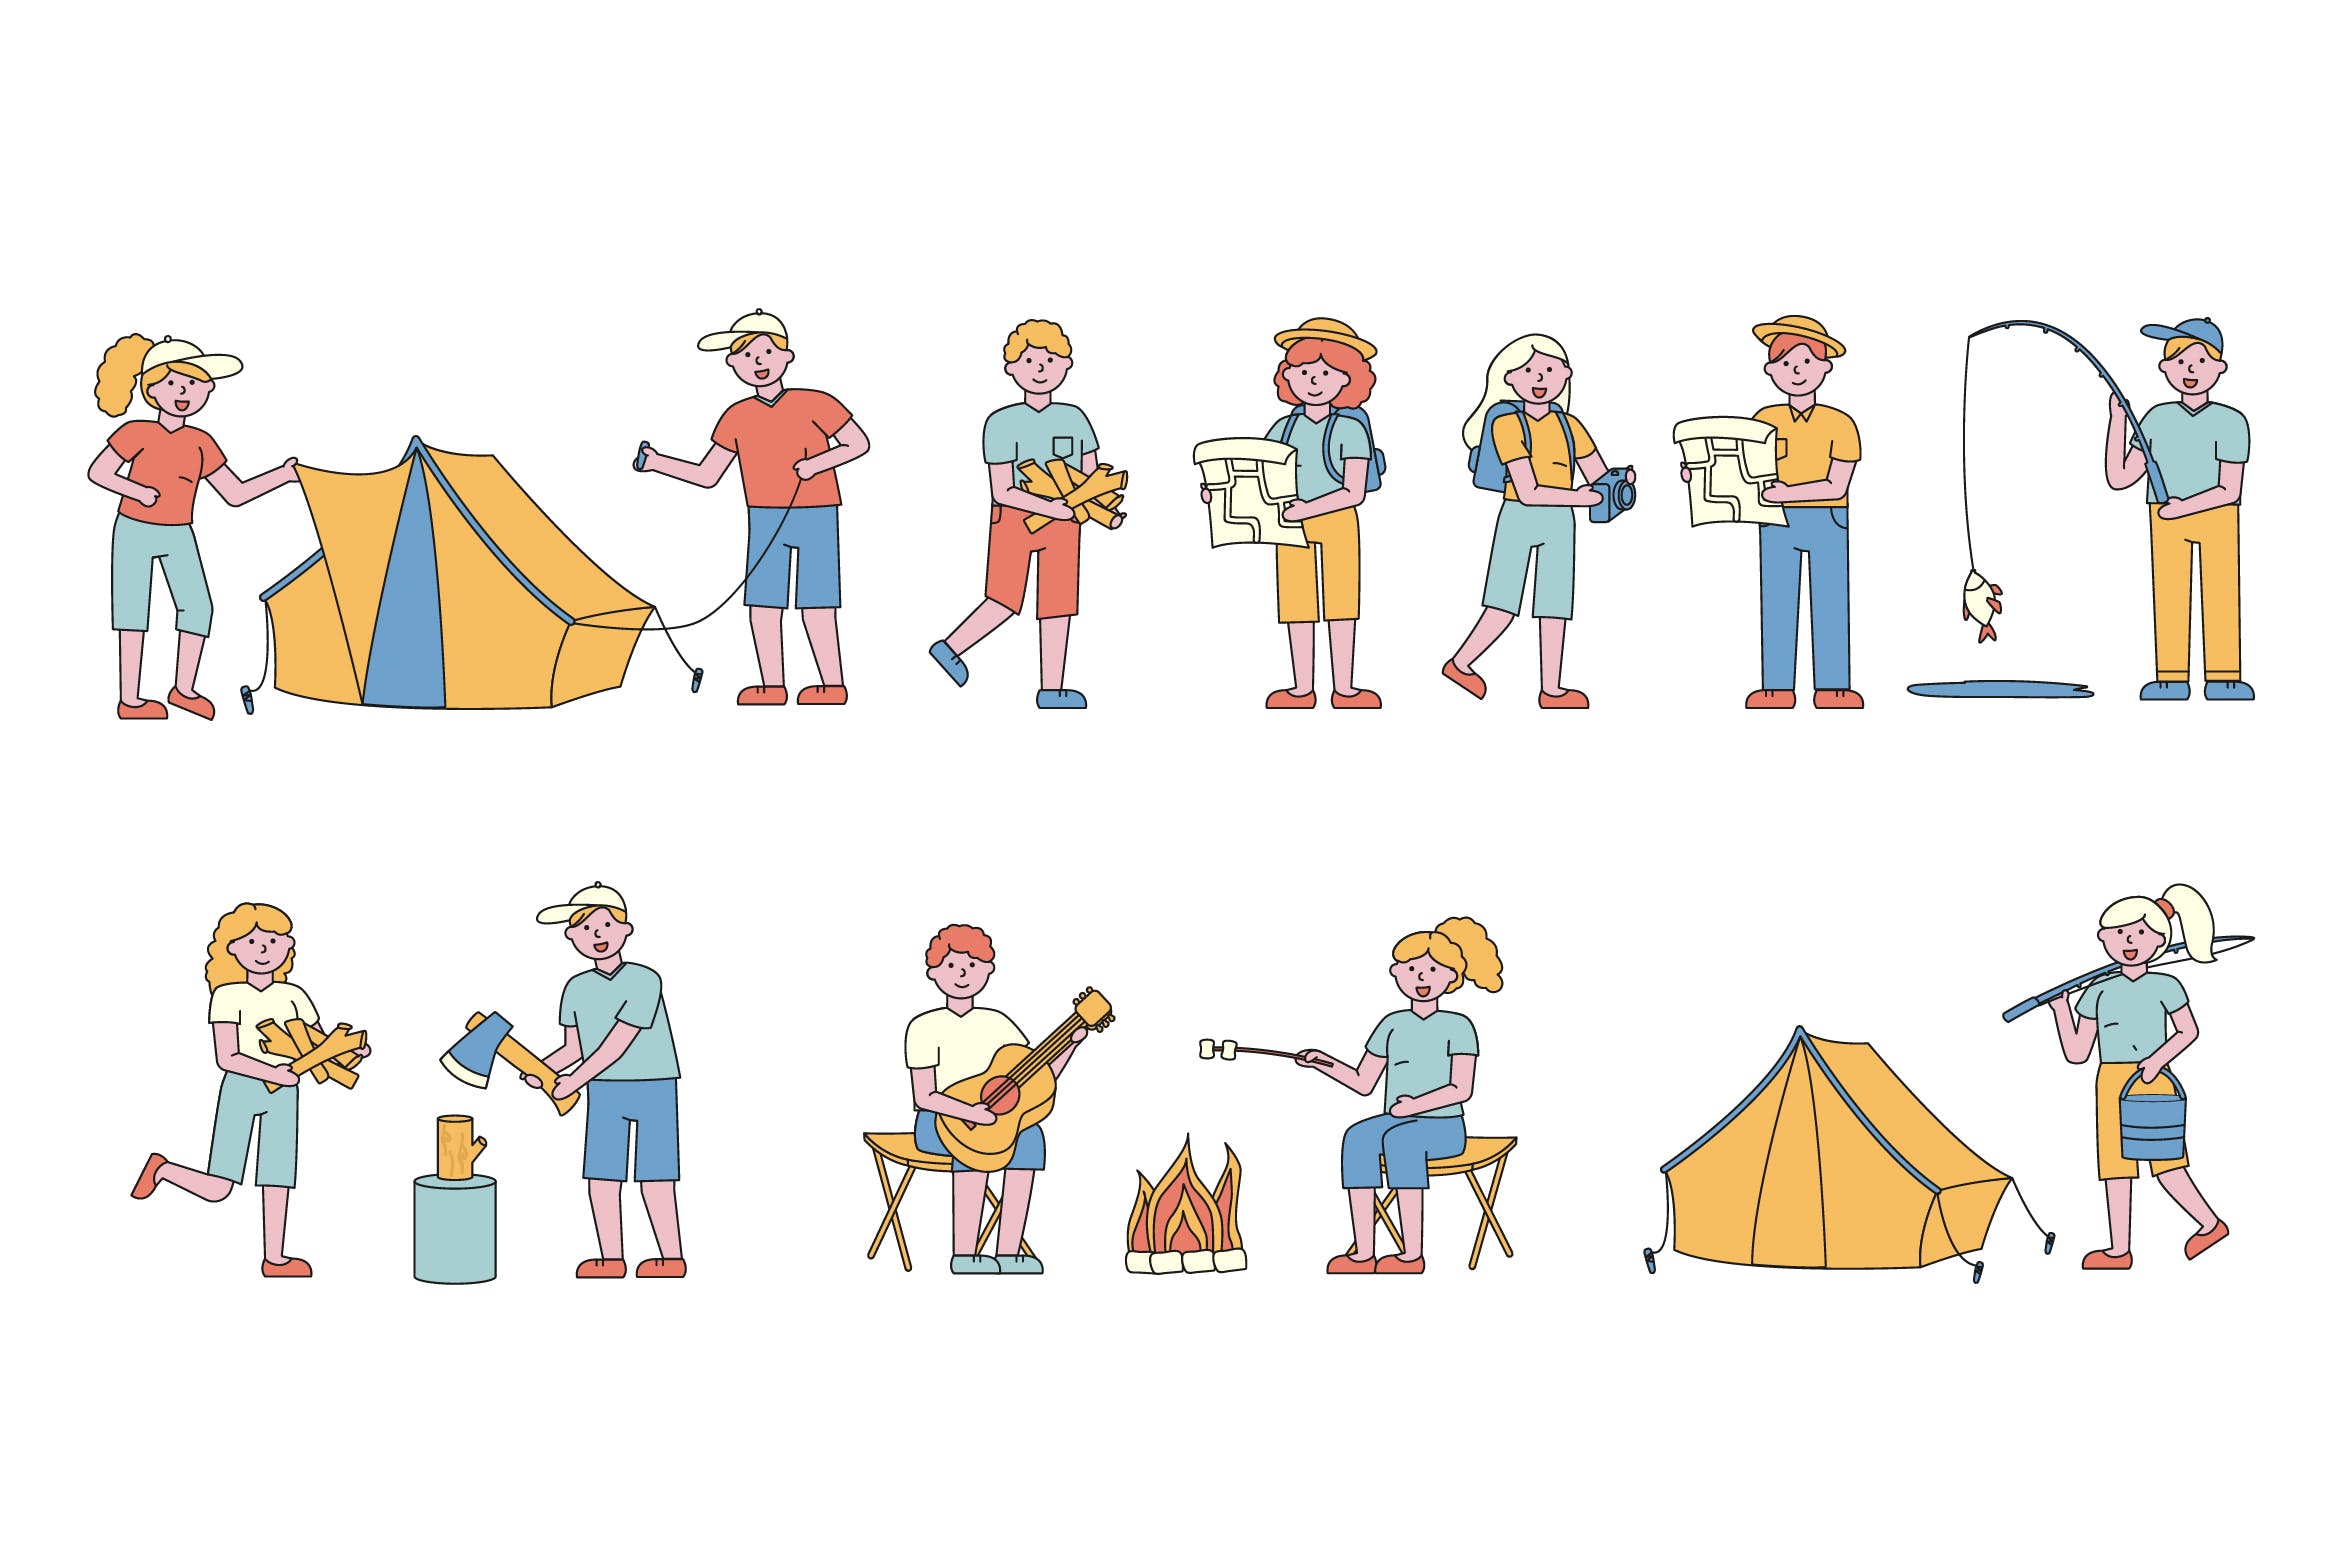 野营户外运动主题人物形象线条艺术矢量插画普贤居精选素材 Campers Lineart People Character Collection插图